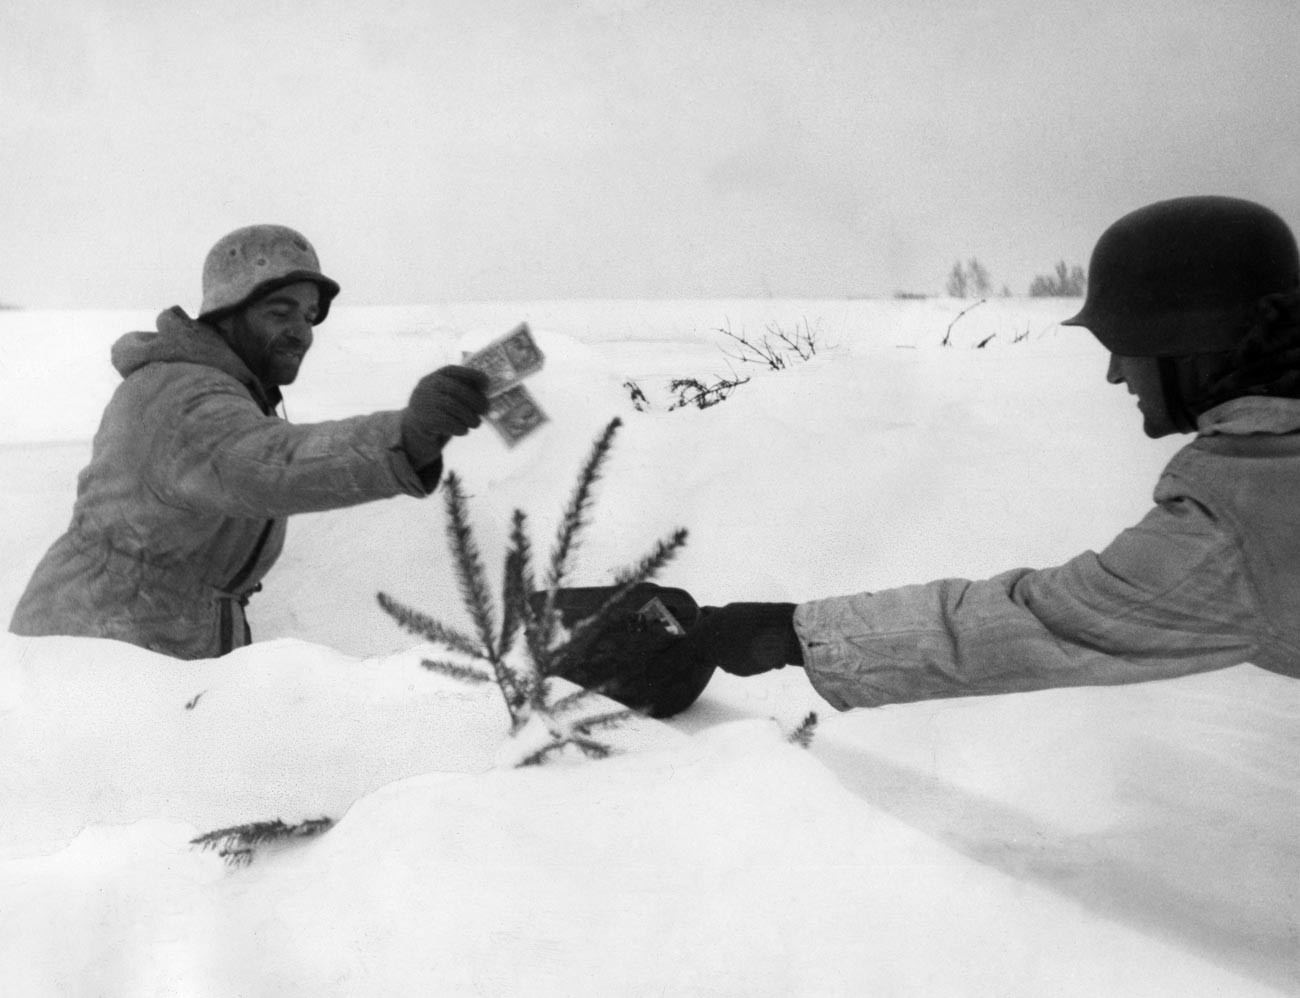 Дански војници у Курландији, фебруар 1945.